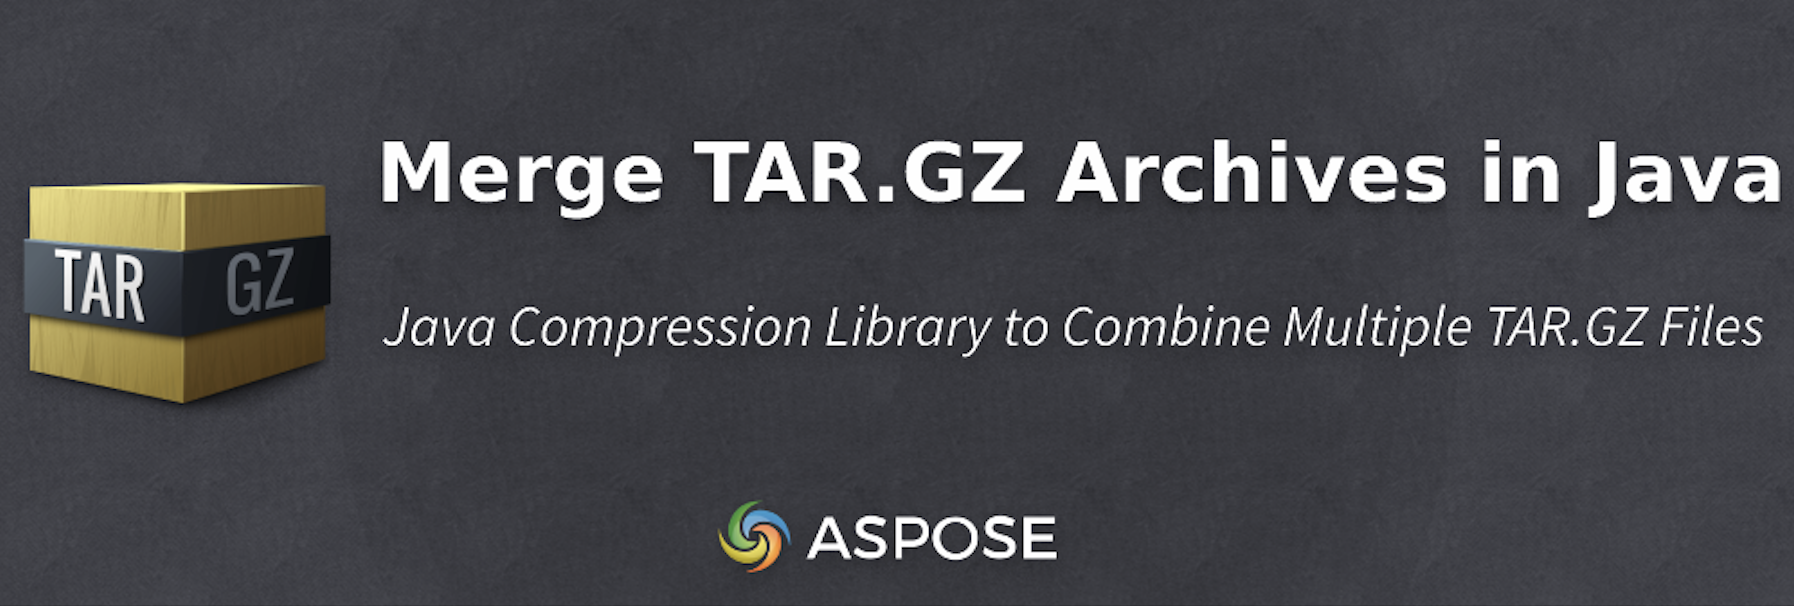 بایگانی های TAR.GZ در Java را به صورت برنامه ای ادغام کنید